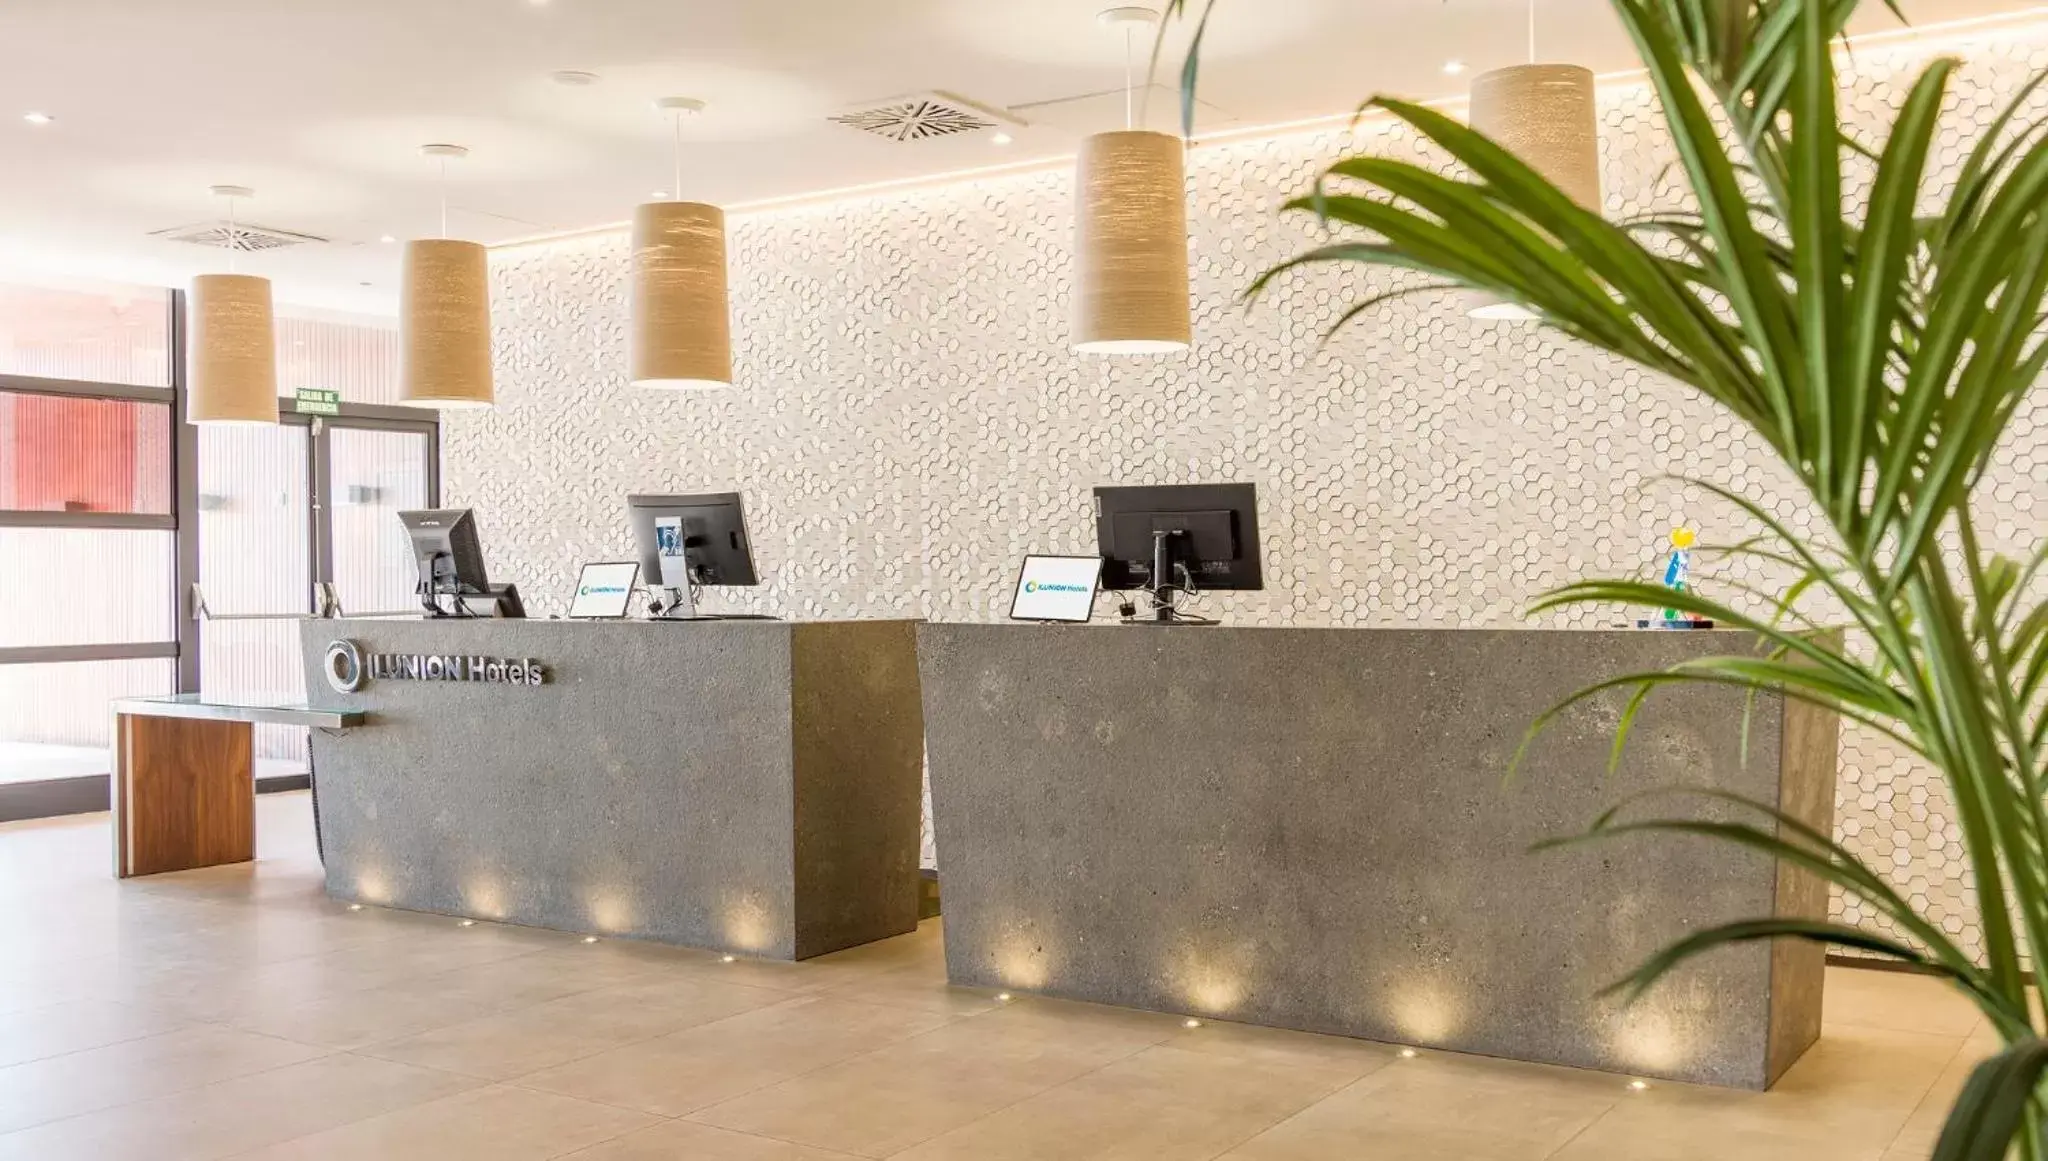 Lobby or reception, Lobby/Reception in Ilunion Fuengirola